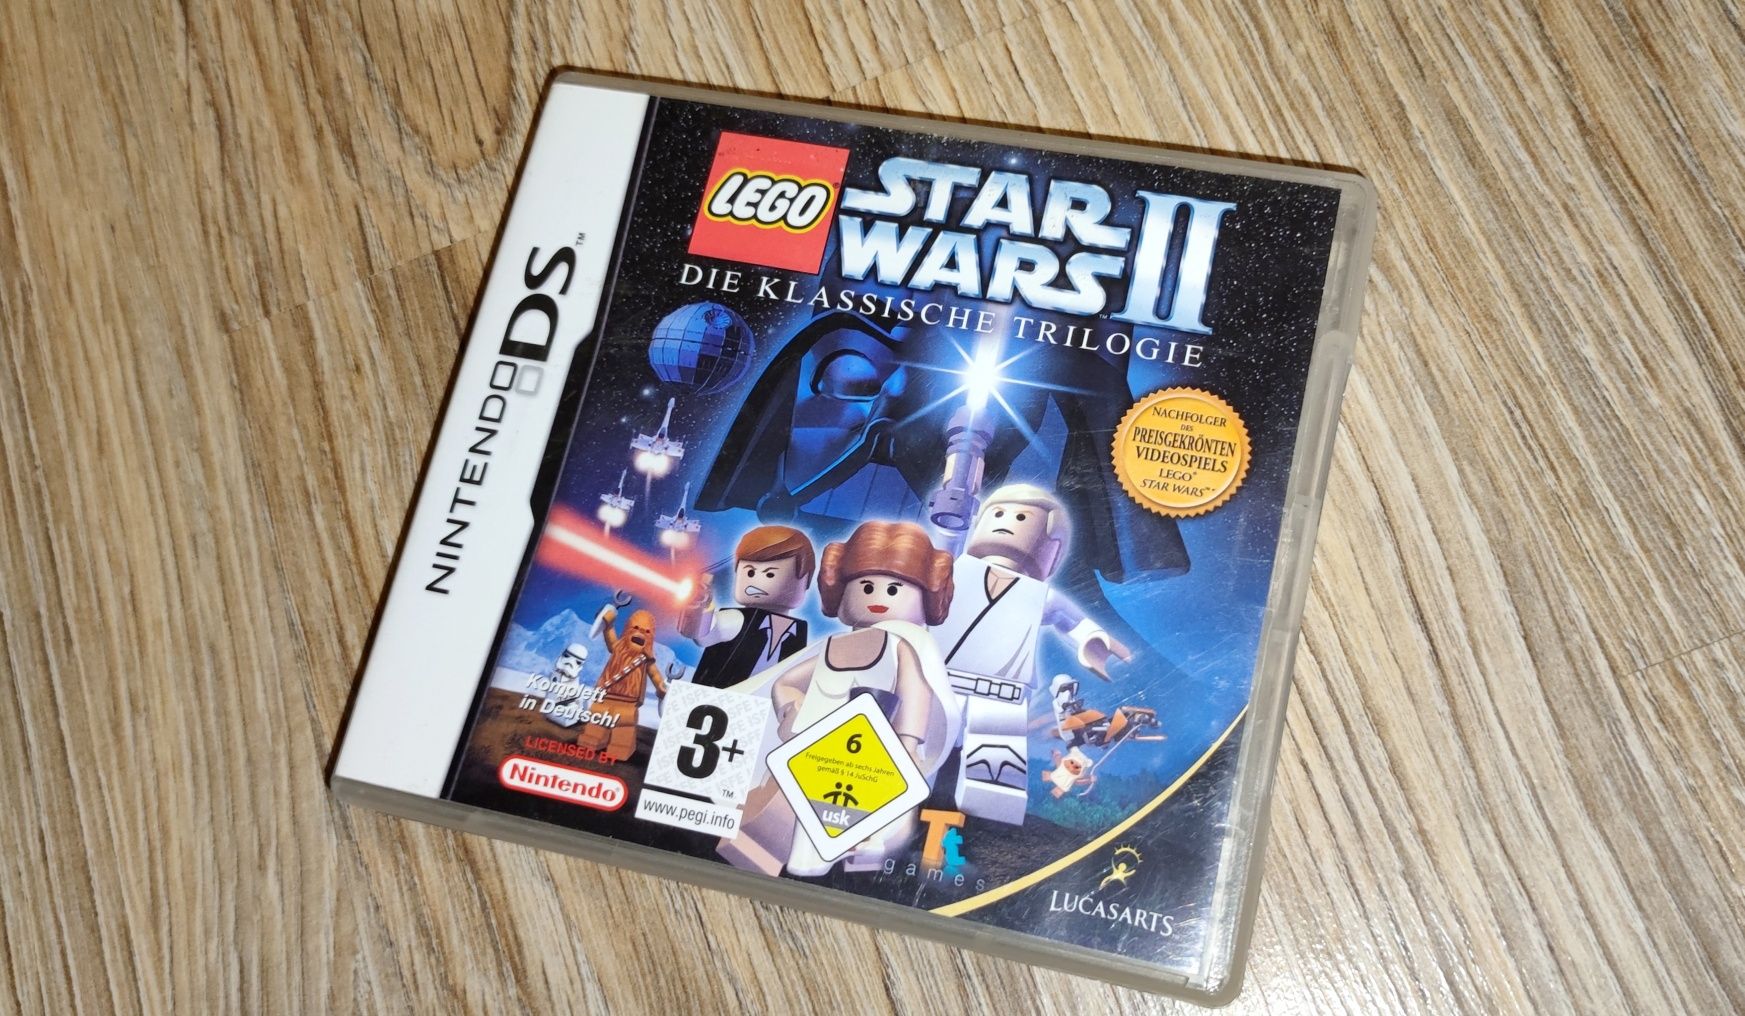 Nintendo DS LEGO Star Wars ll